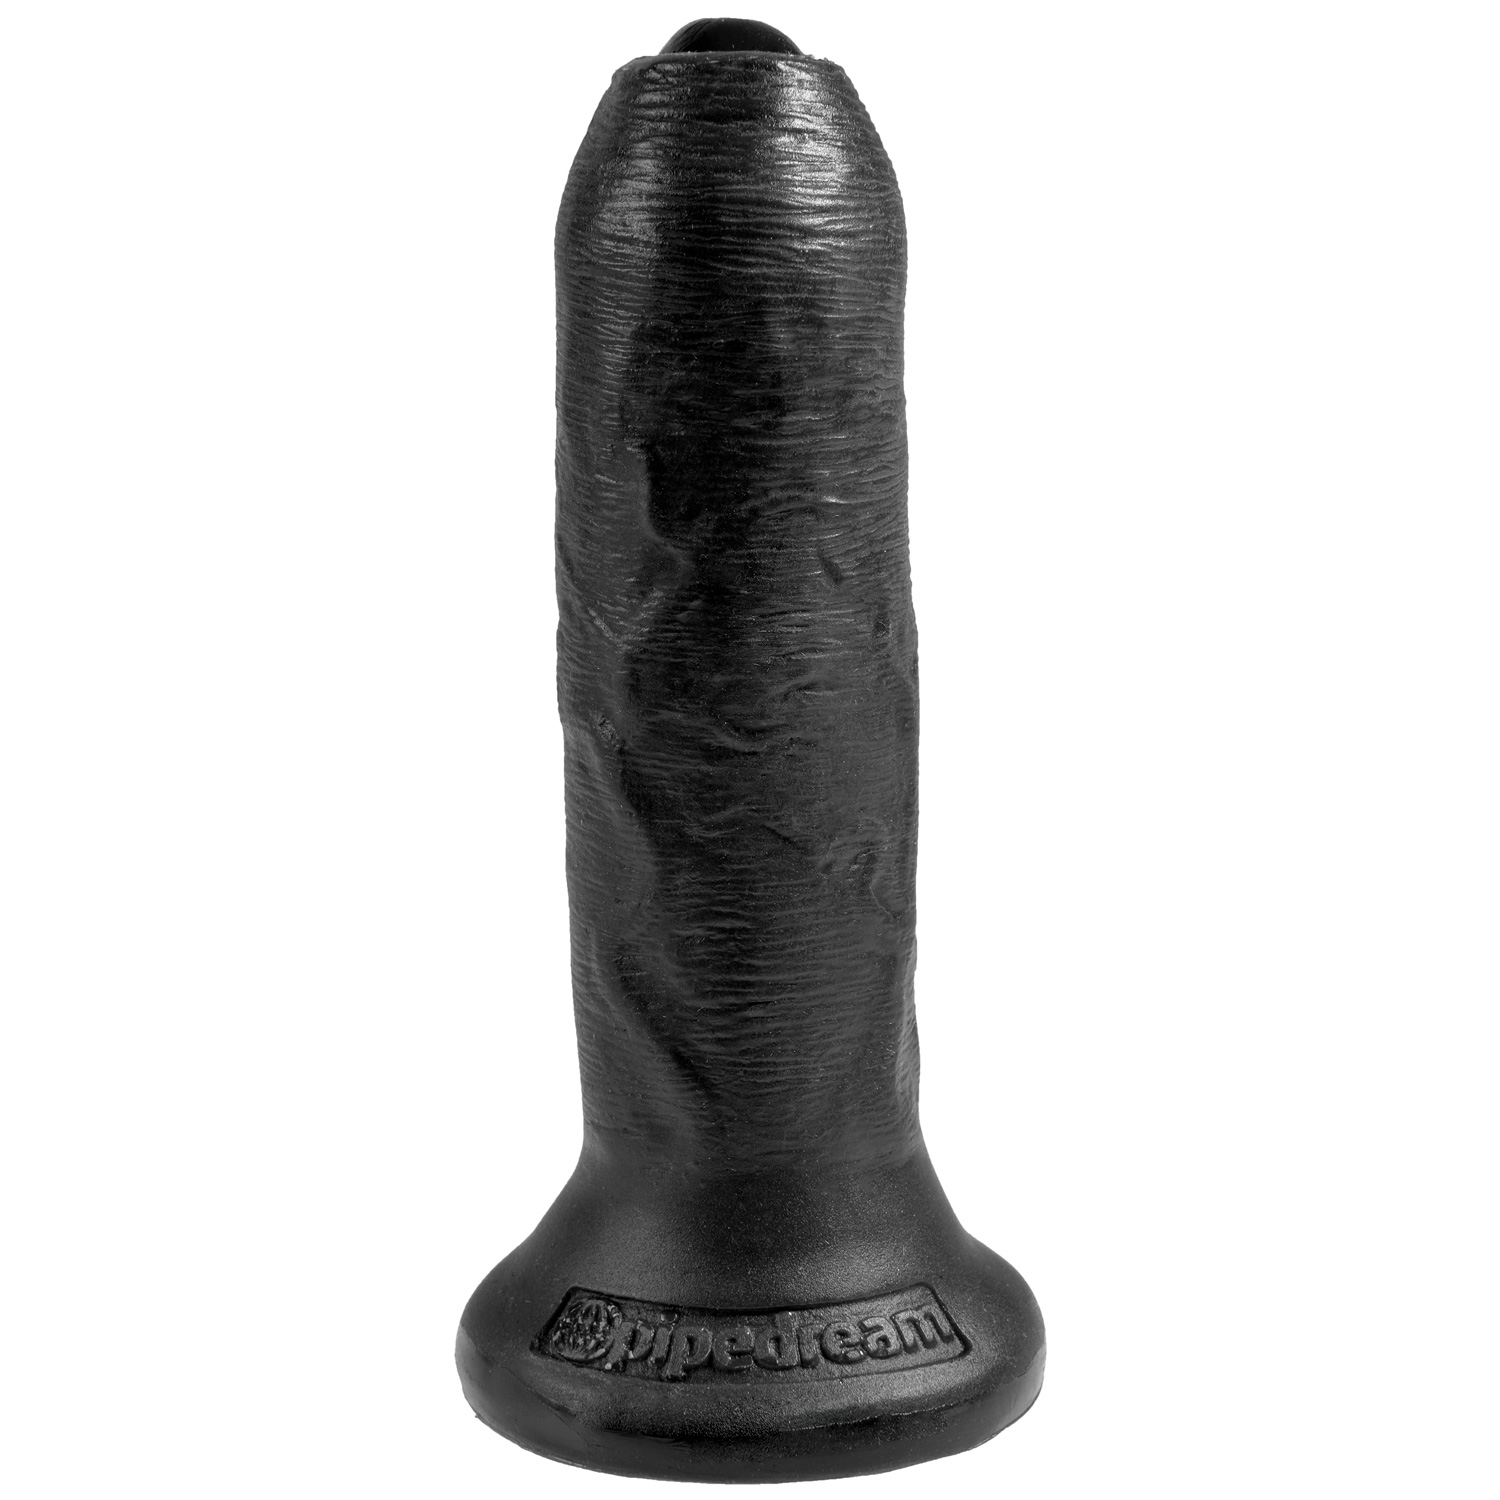 King Penis King Penis Uncut Realistisk Dildo med Testikler 18,5 cm - Svart